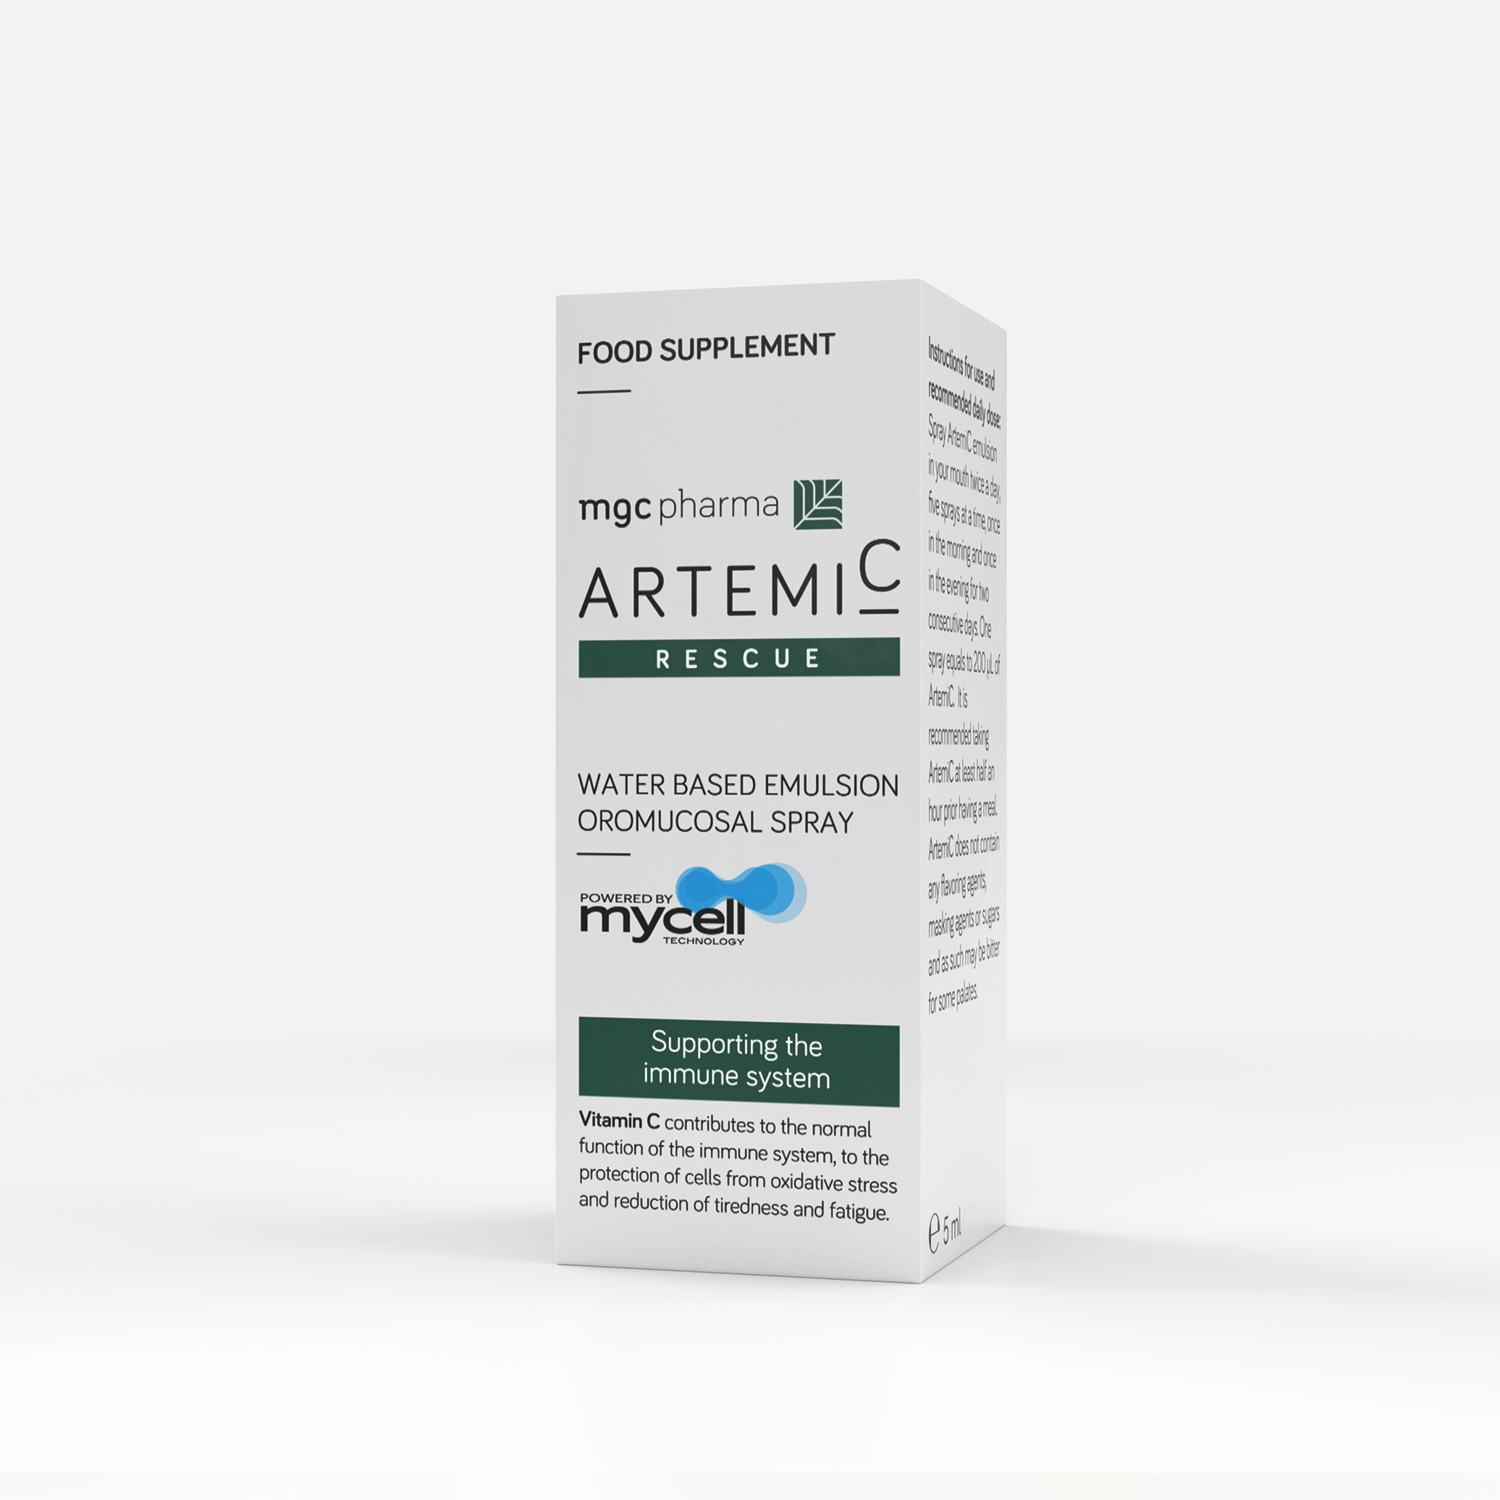 Artemic Rescue - Packaging